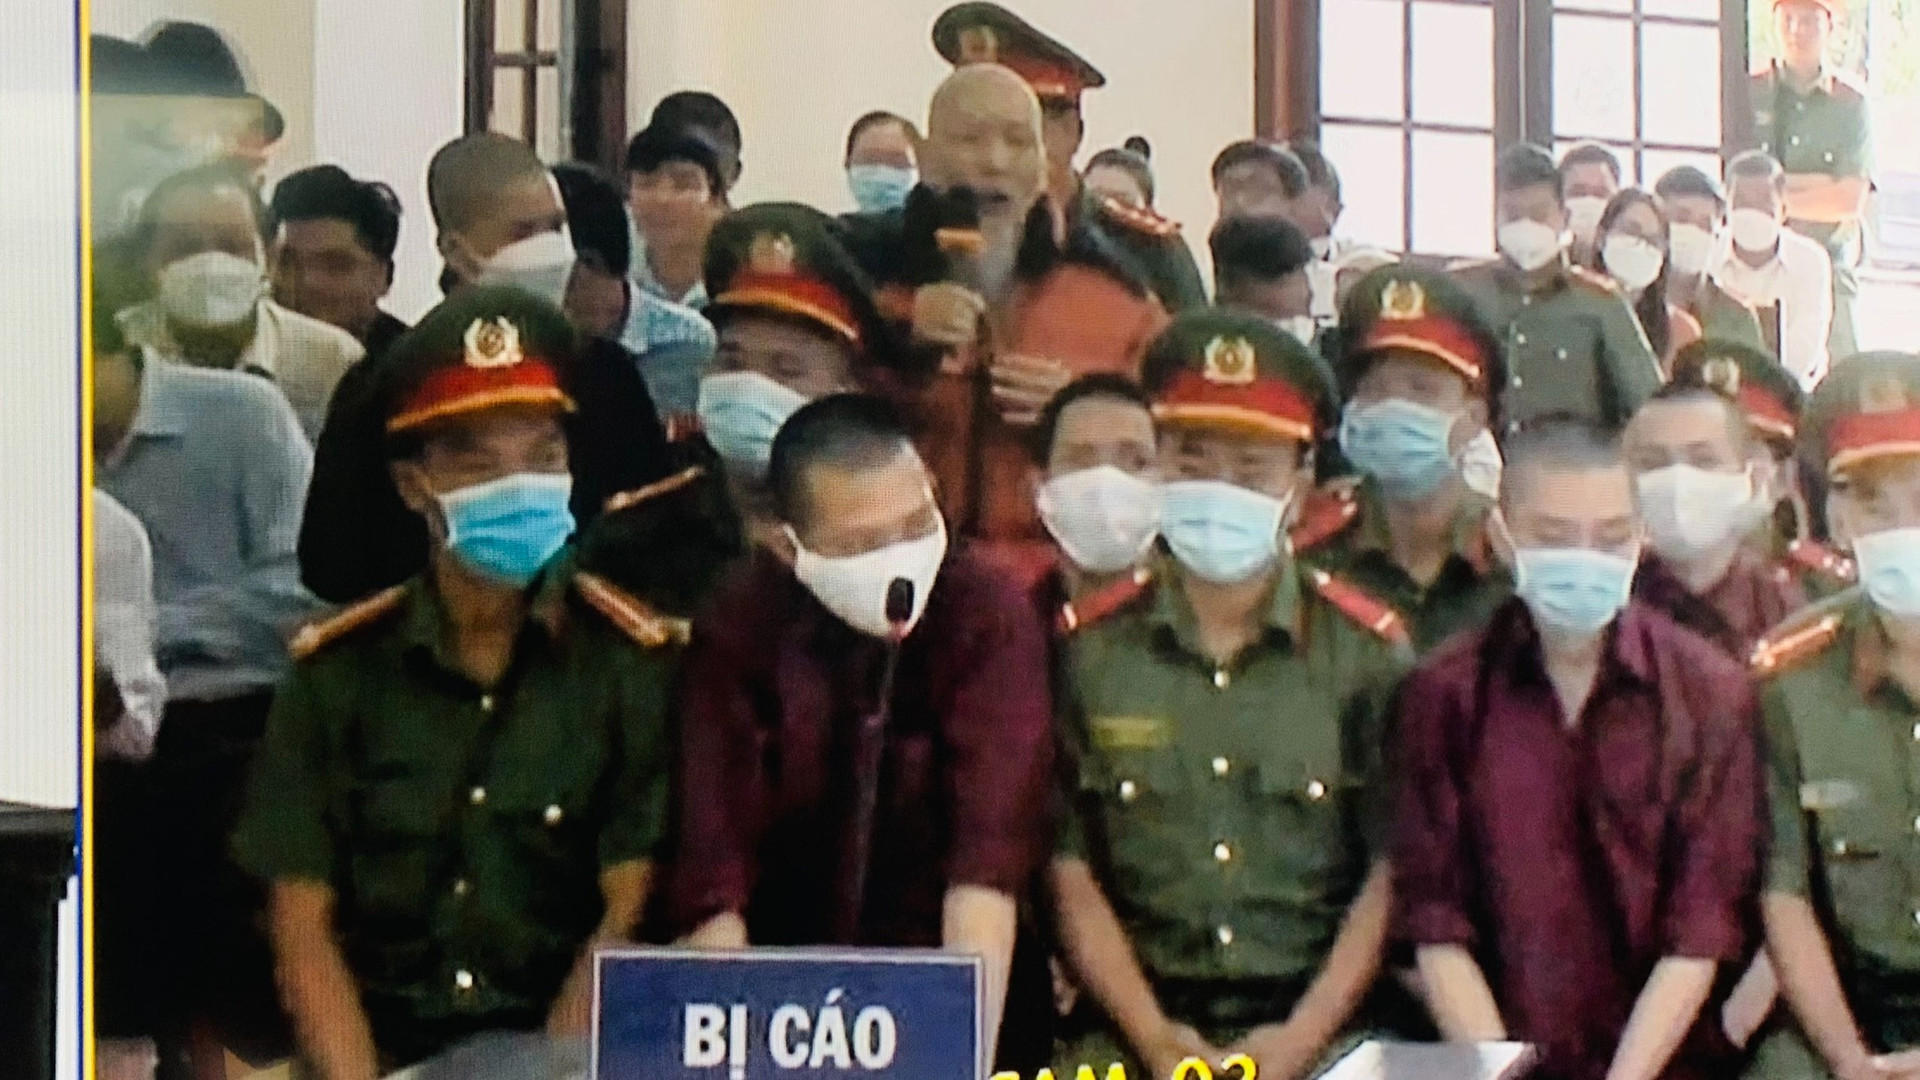 Lê Tùng Vân đóng cửa Tịnh thất Bồng Lai, từ chối nhận kết quả giám định ADN - ảnh 2